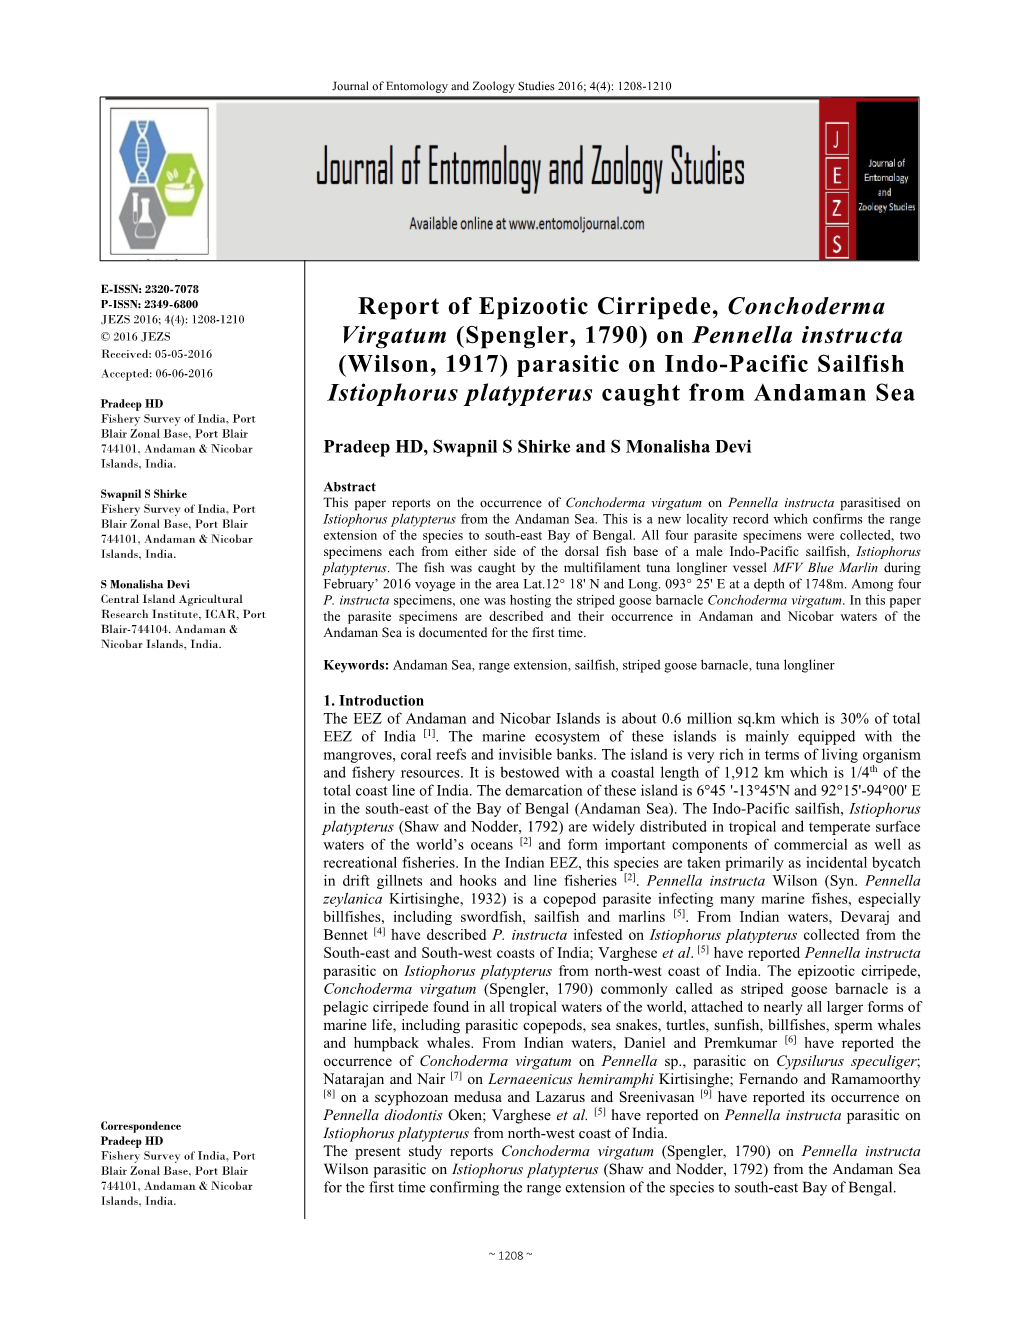 Report of Epizootic Cirripede, Conchoderma Virgatum (Spengler